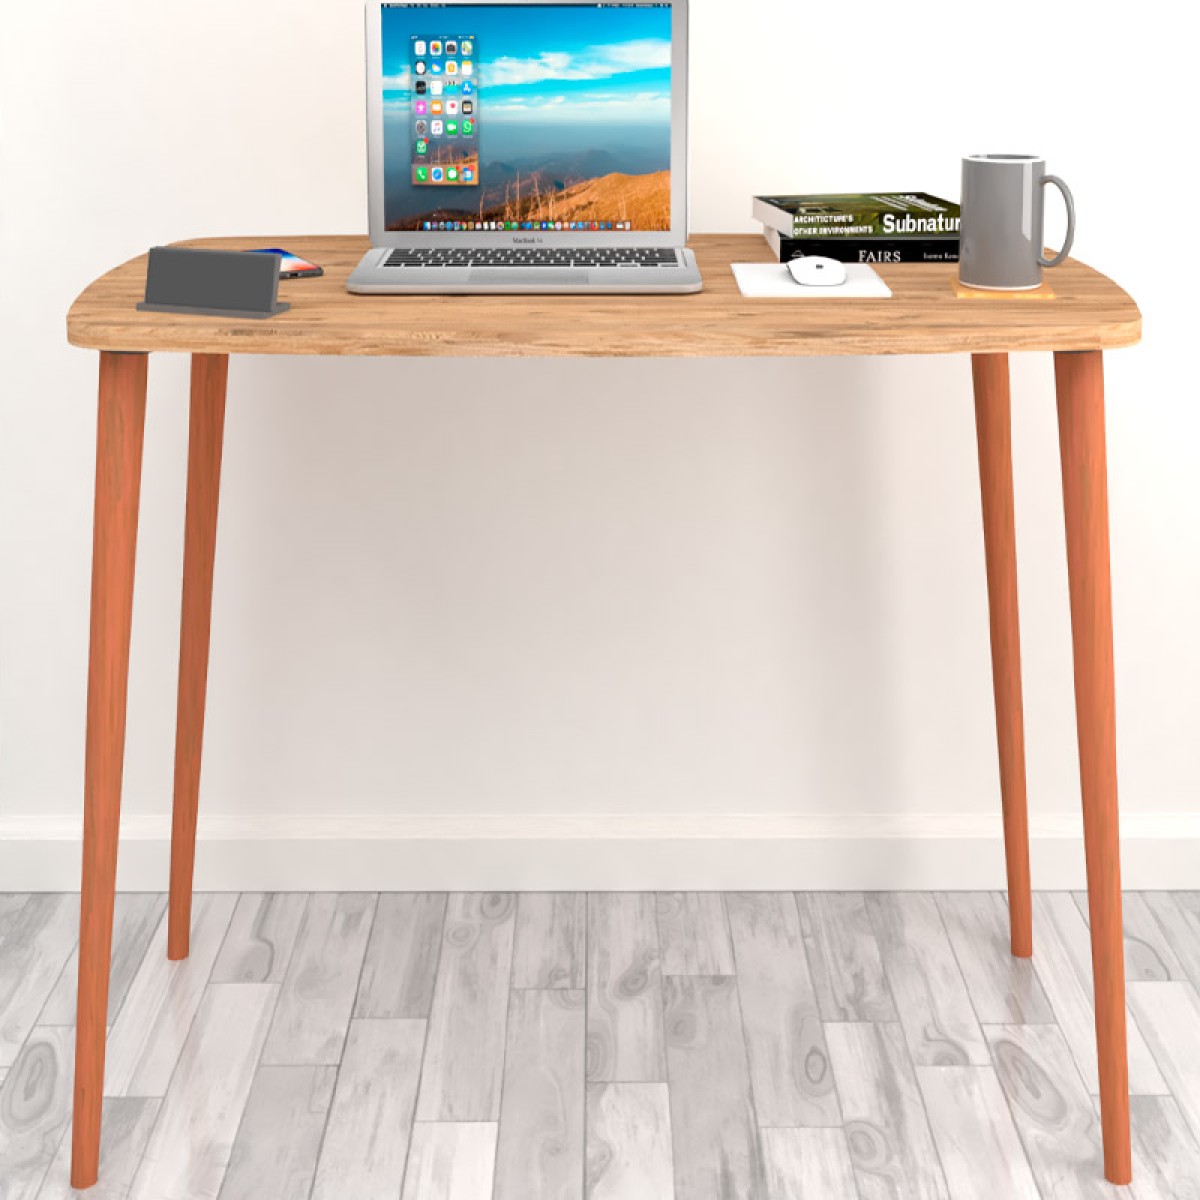 Γραφείο - τραπέζι μελαμίνης Deina  χρώμα pine oak 105x60x72εκ.